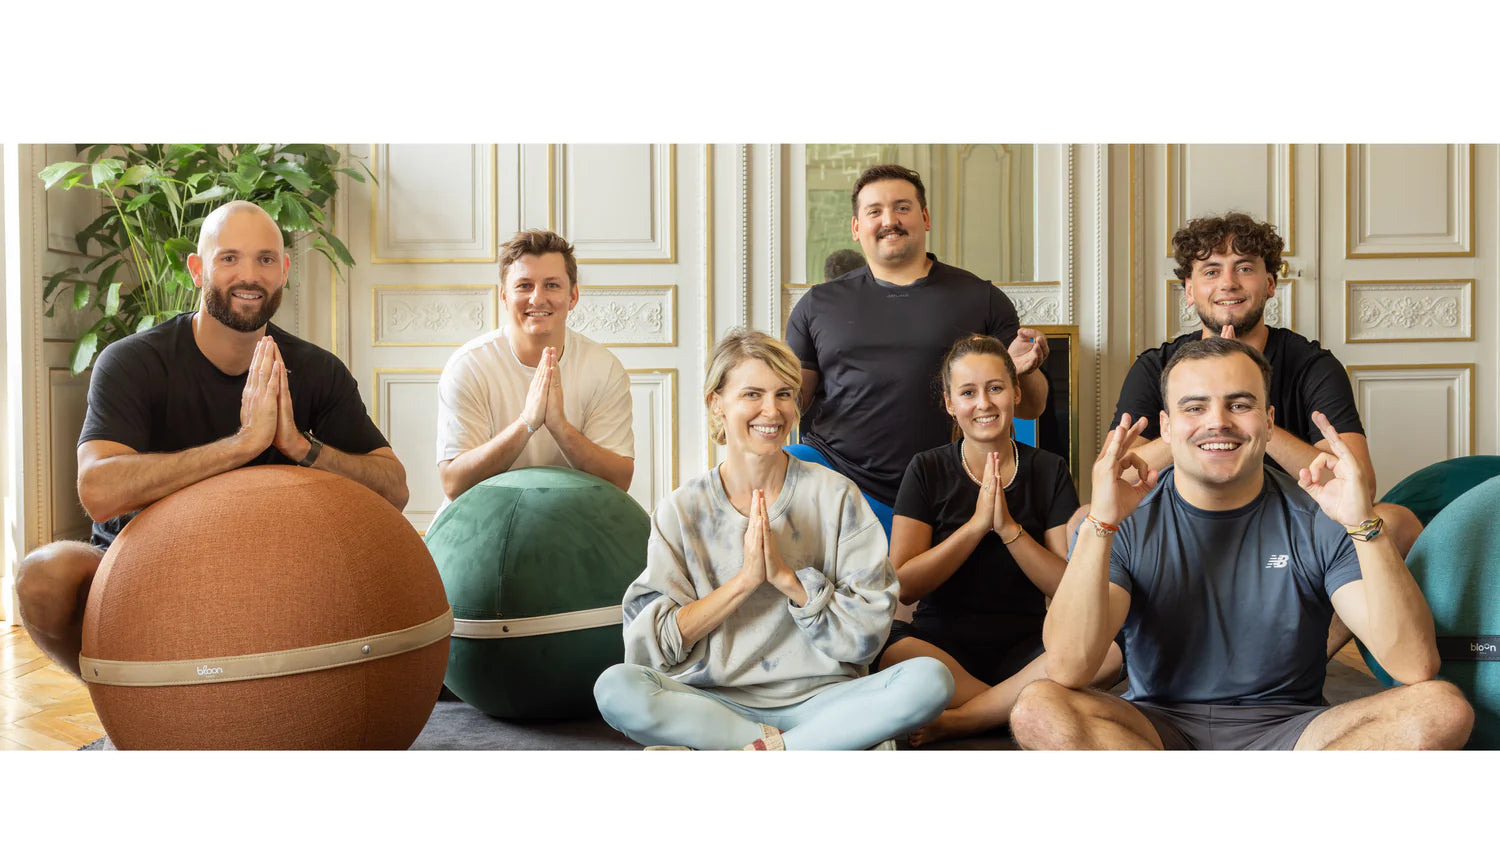 Le tout premier programme de yoga créé par Bloon !